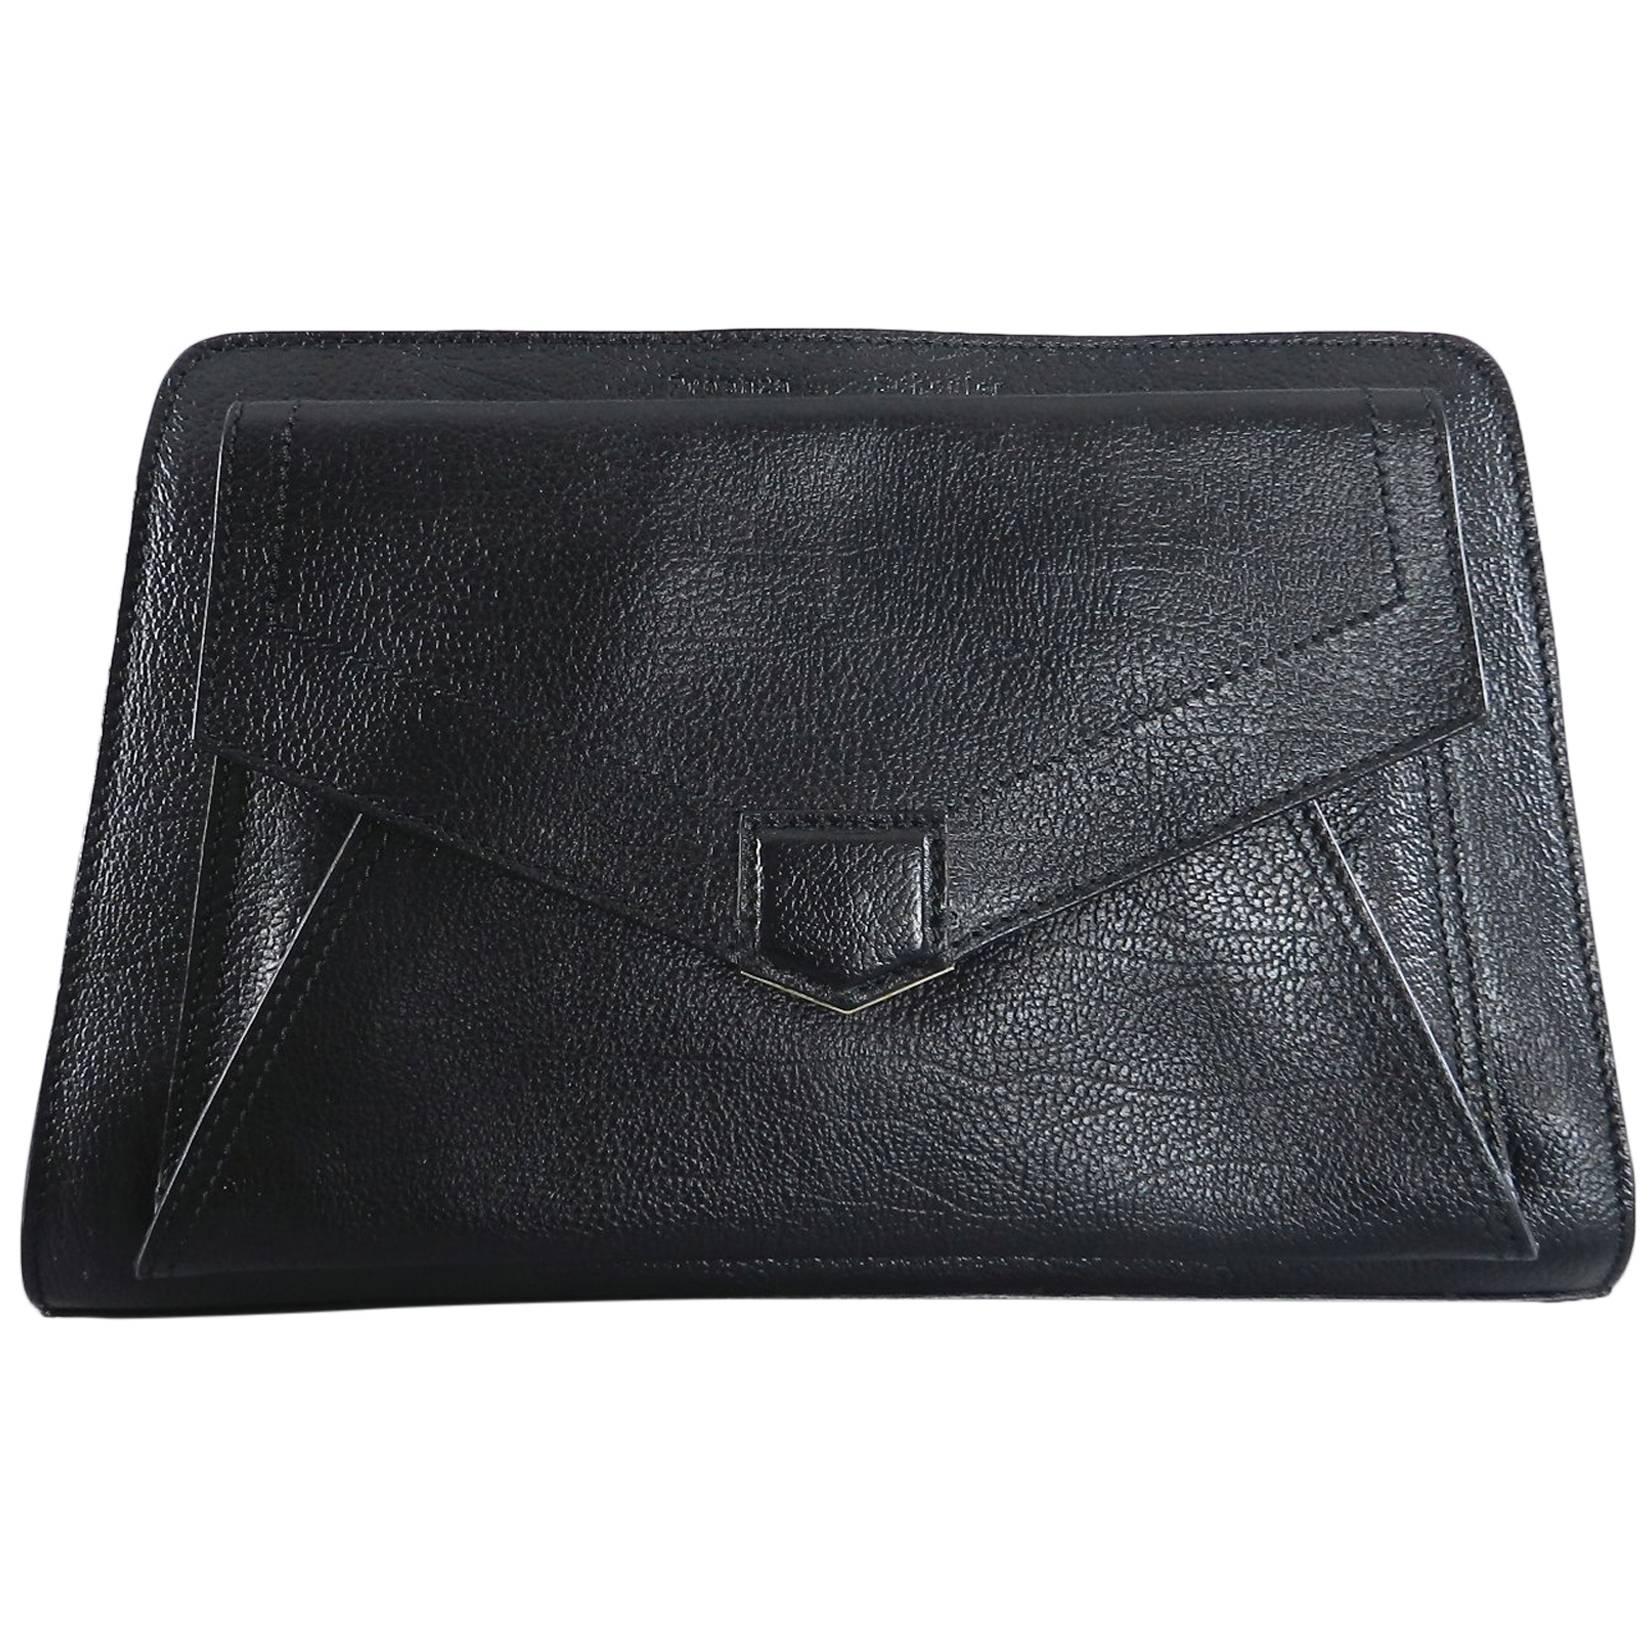 Proenza Schouler Black Clutch Bag with Silver Zipper